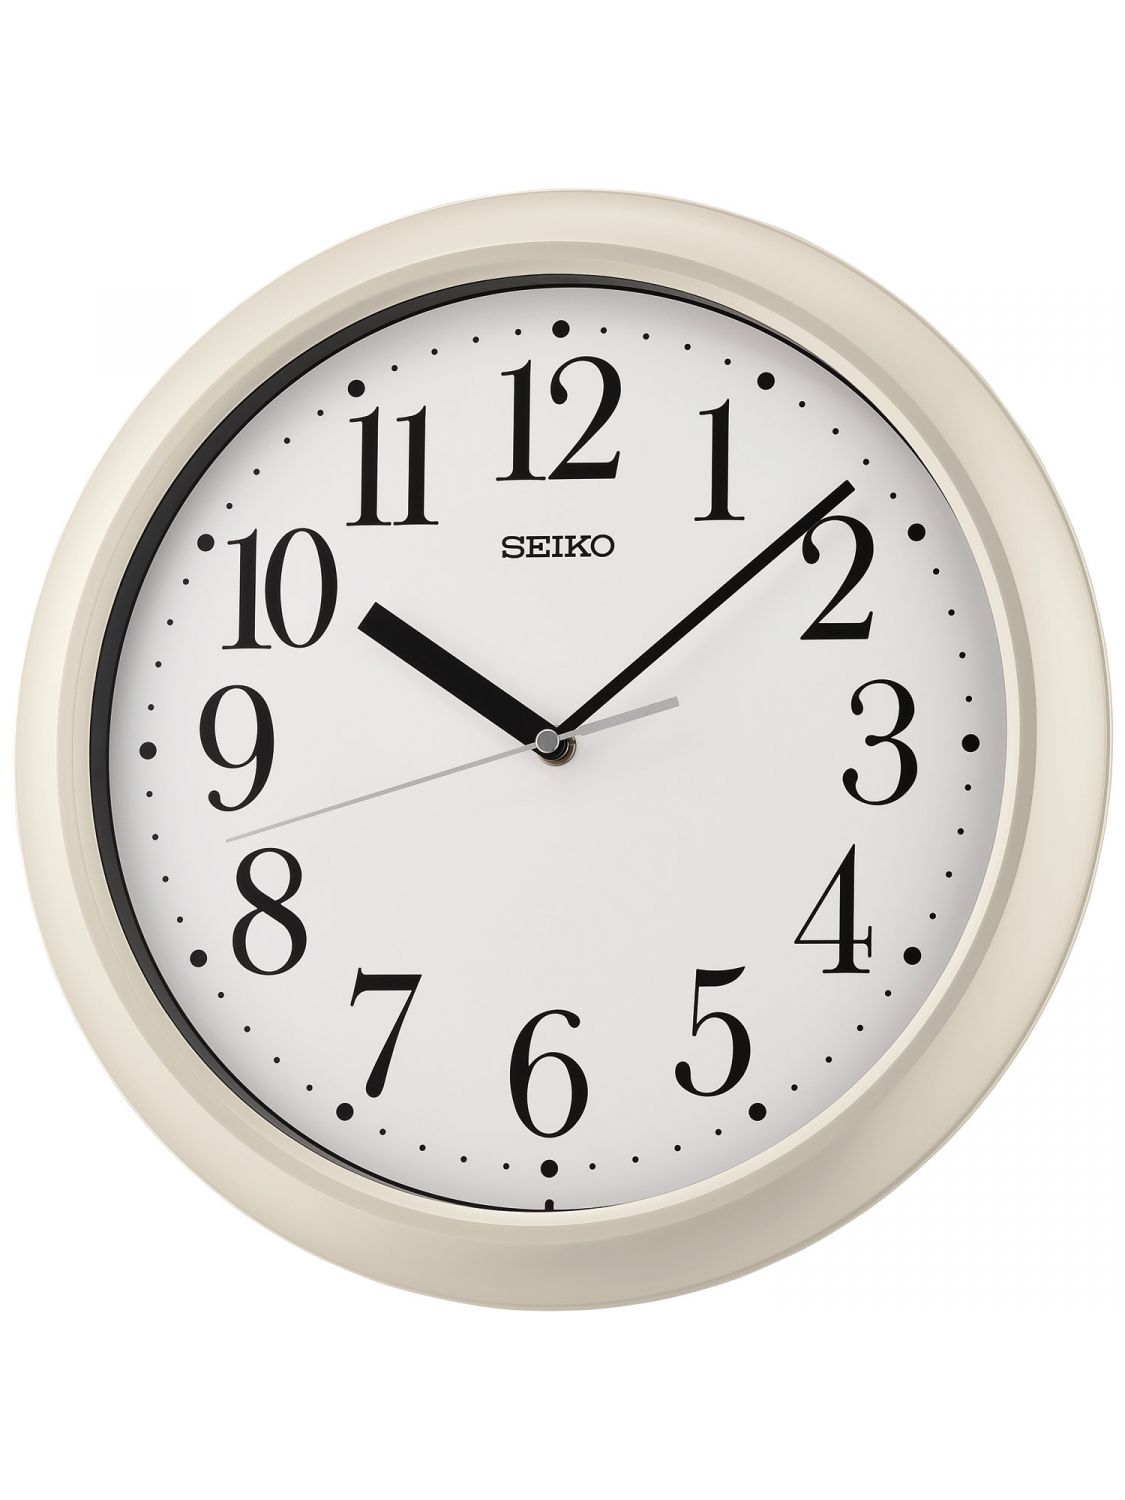 SEIKO QXA787W Wall Clock Quartz White • uhrcenter